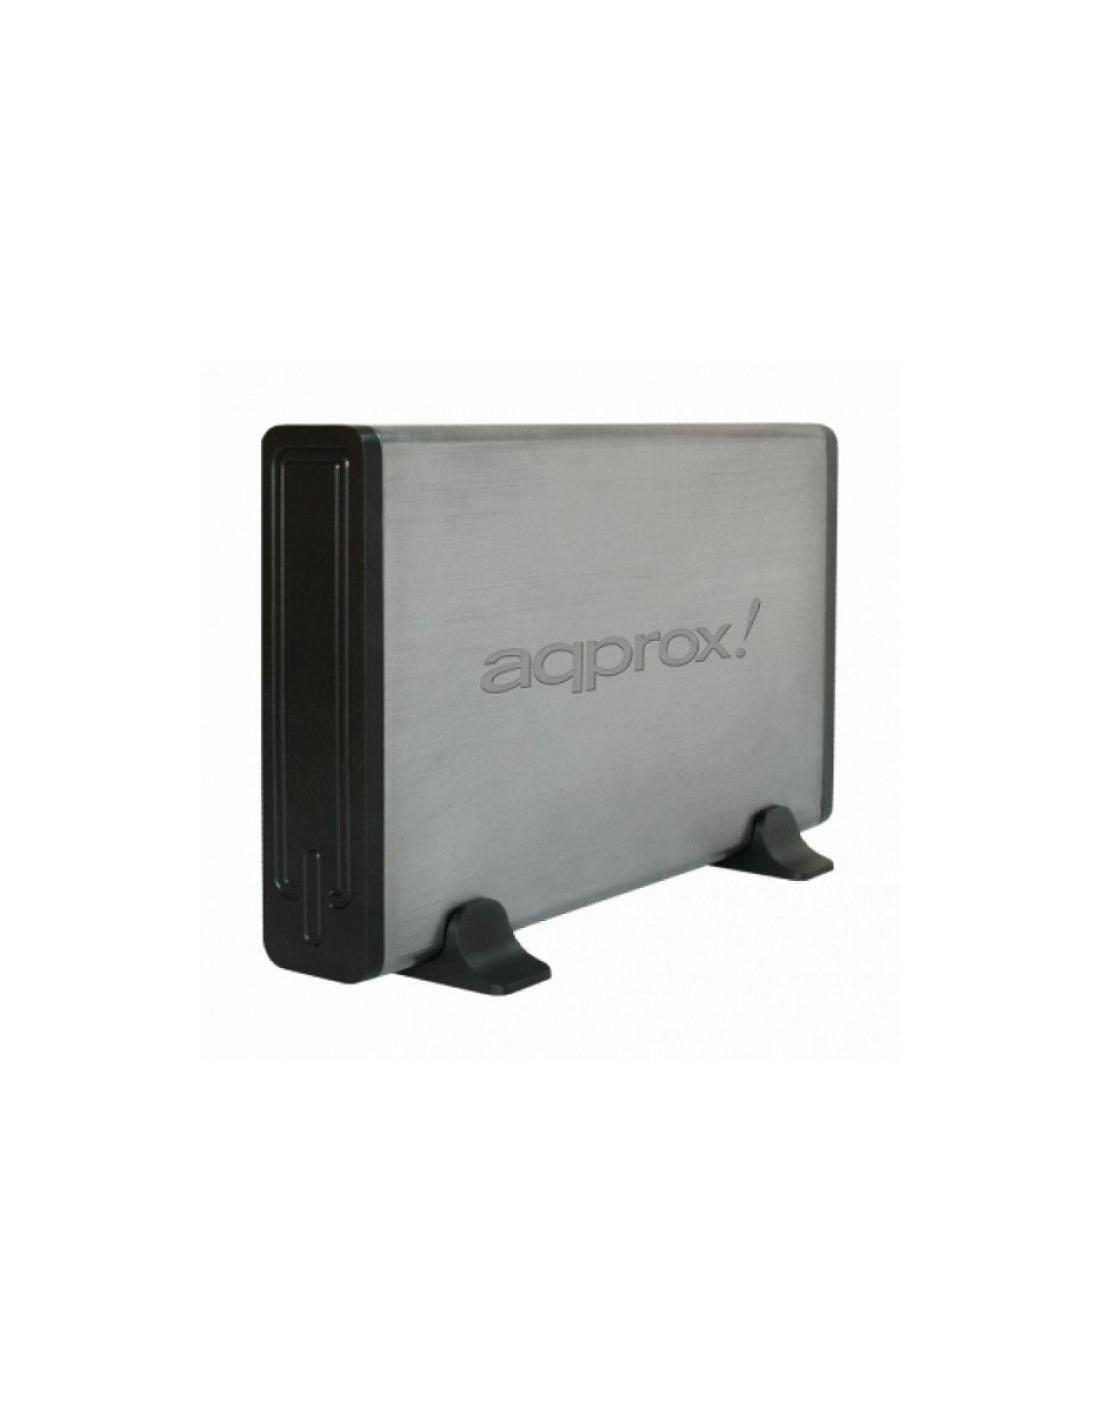 CAJA DISCO DURO AQPROX EXTERNA 3.5 USB 2.0 PLATA